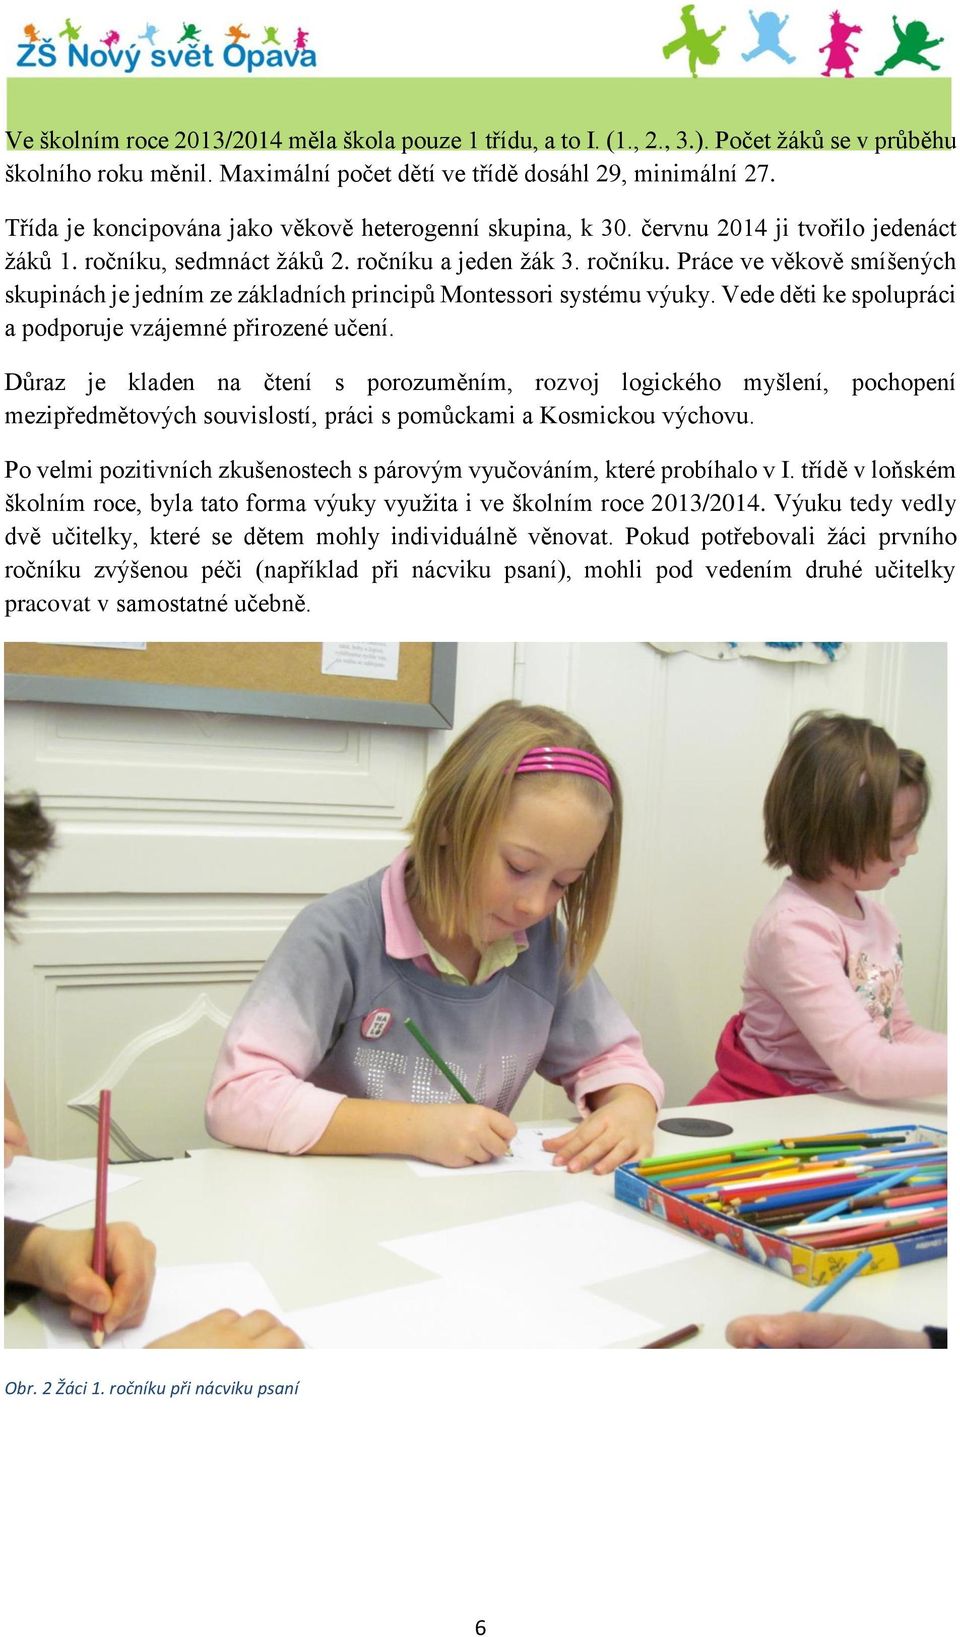 sedmnáct žáků 2. ročníku a jeden žák 3. ročníku. Práce ve věkově smíšených skupinách je jedním ze základních principů Montessori systému výuky.